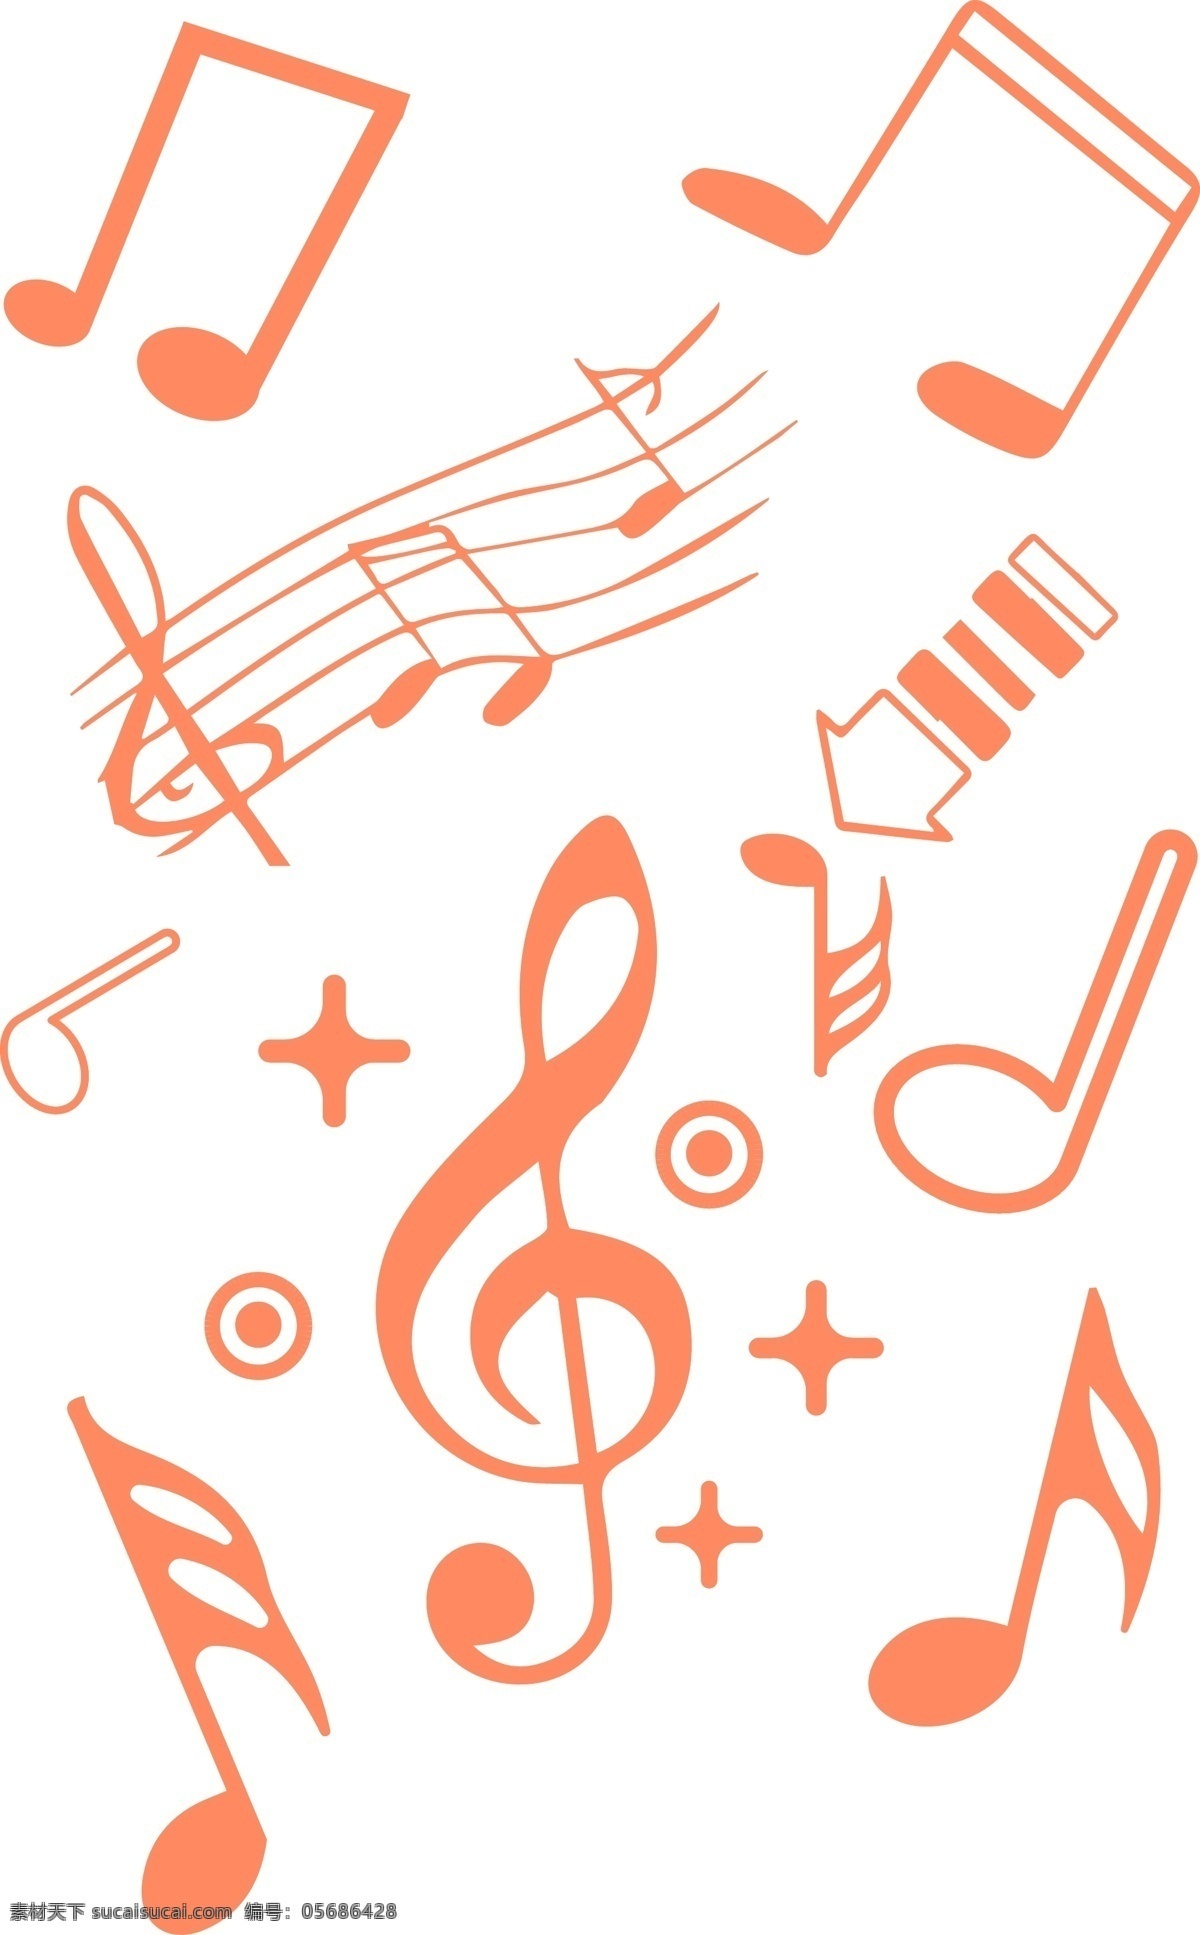 音乐 元素符号 音符 商用 橙色 元素 符号 简单